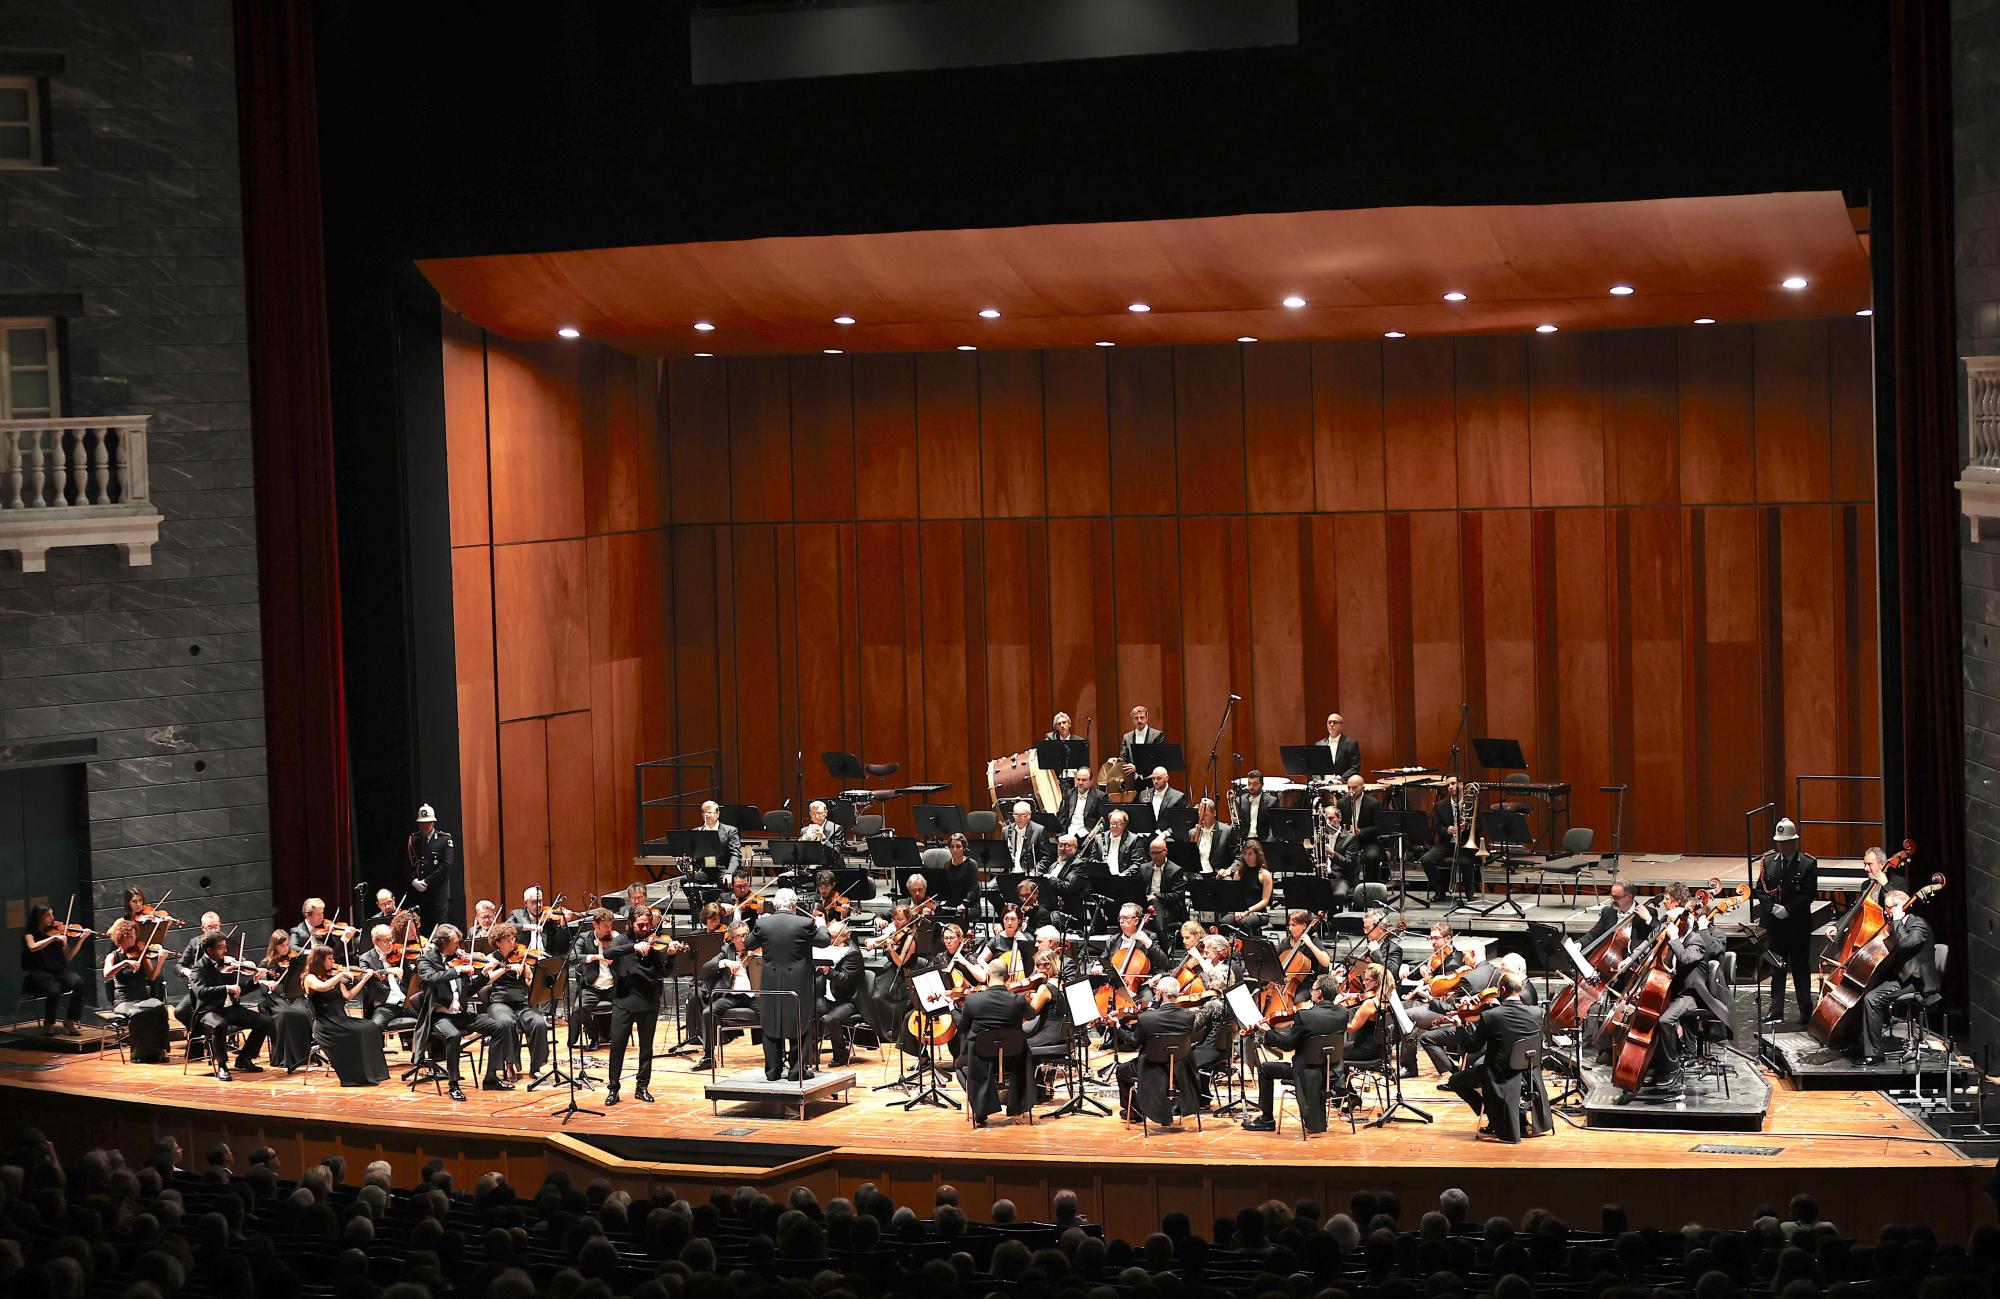 L'Orchestra del Teatro Carlo Felice diretta dal Maestro Renzetti con Giuseppe Gibboni